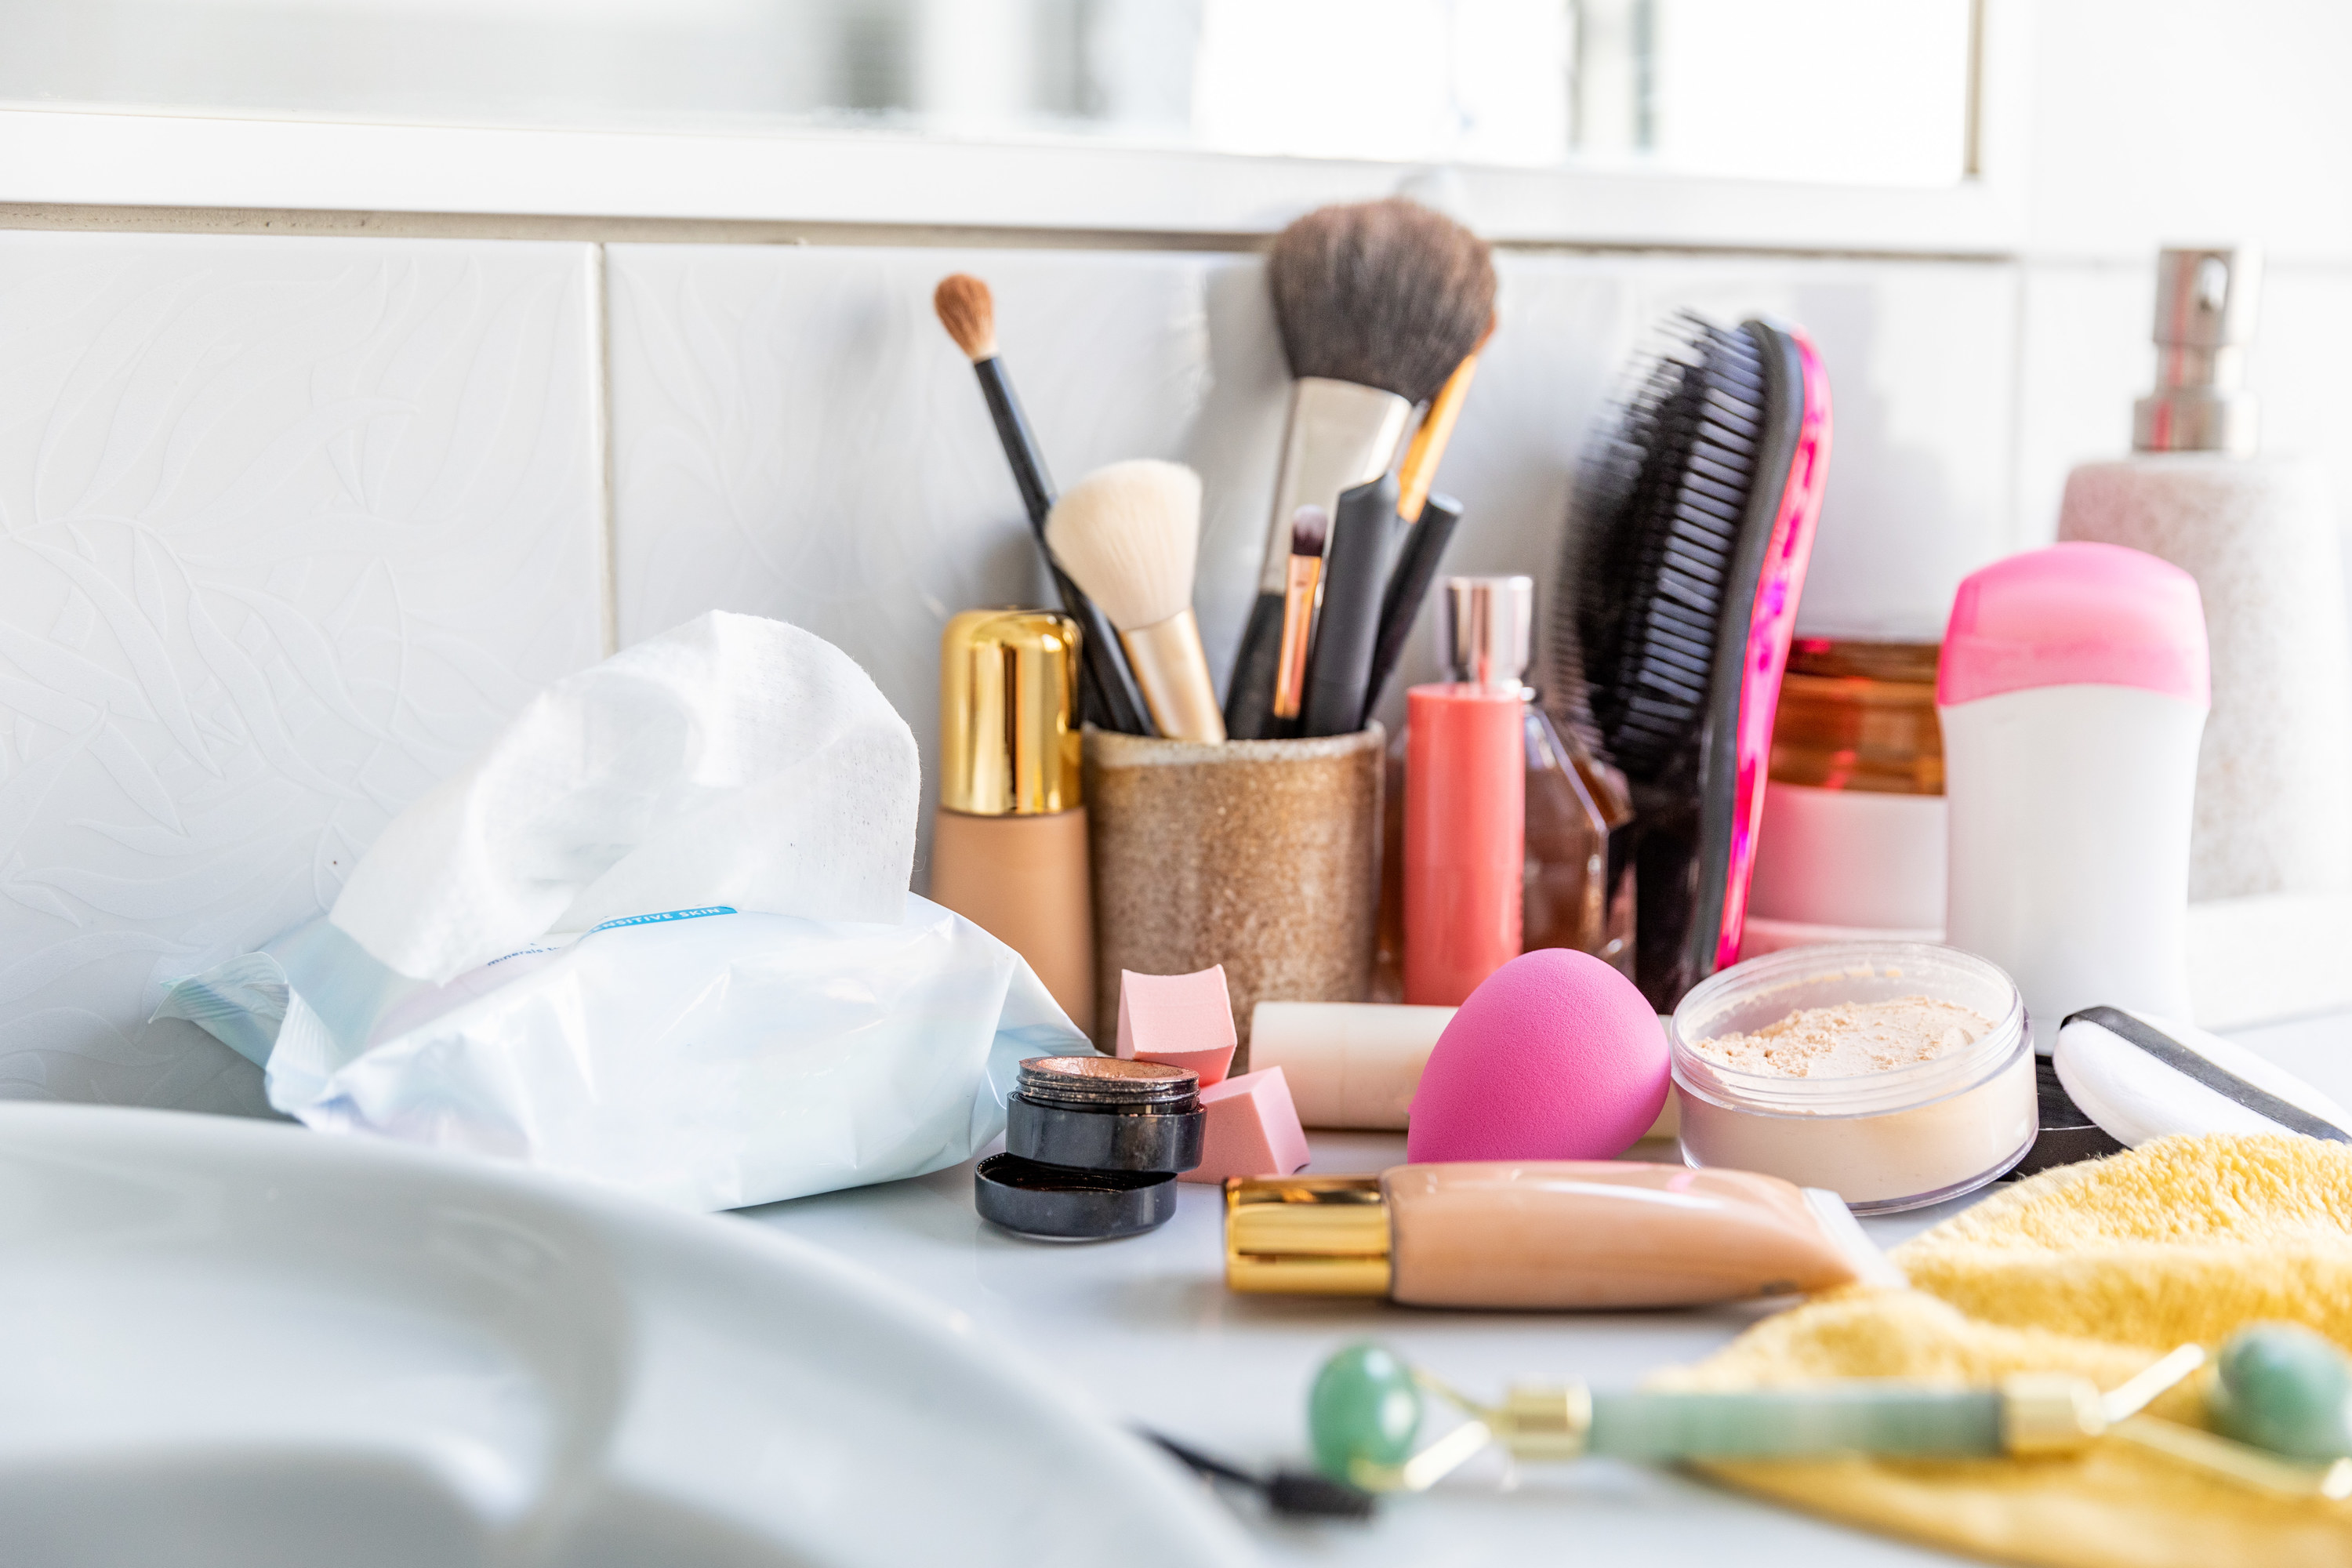 An assortment of makeup on a counter